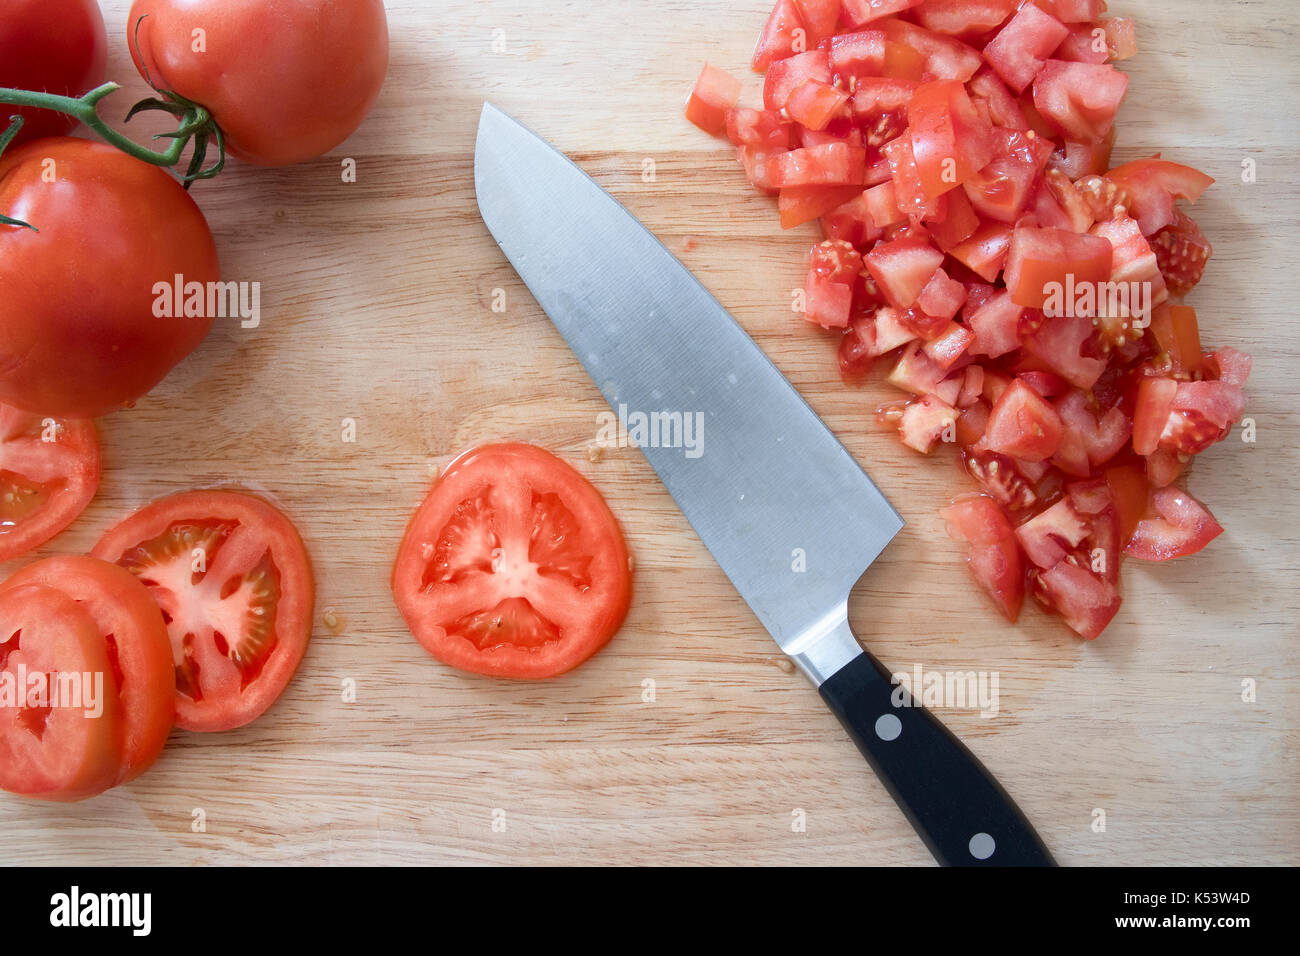 Tomaten/Paradeiser, ganz, in Scheiben geschnitten, gehackt, auf Schneidebrett mit Messer. Stockfoto